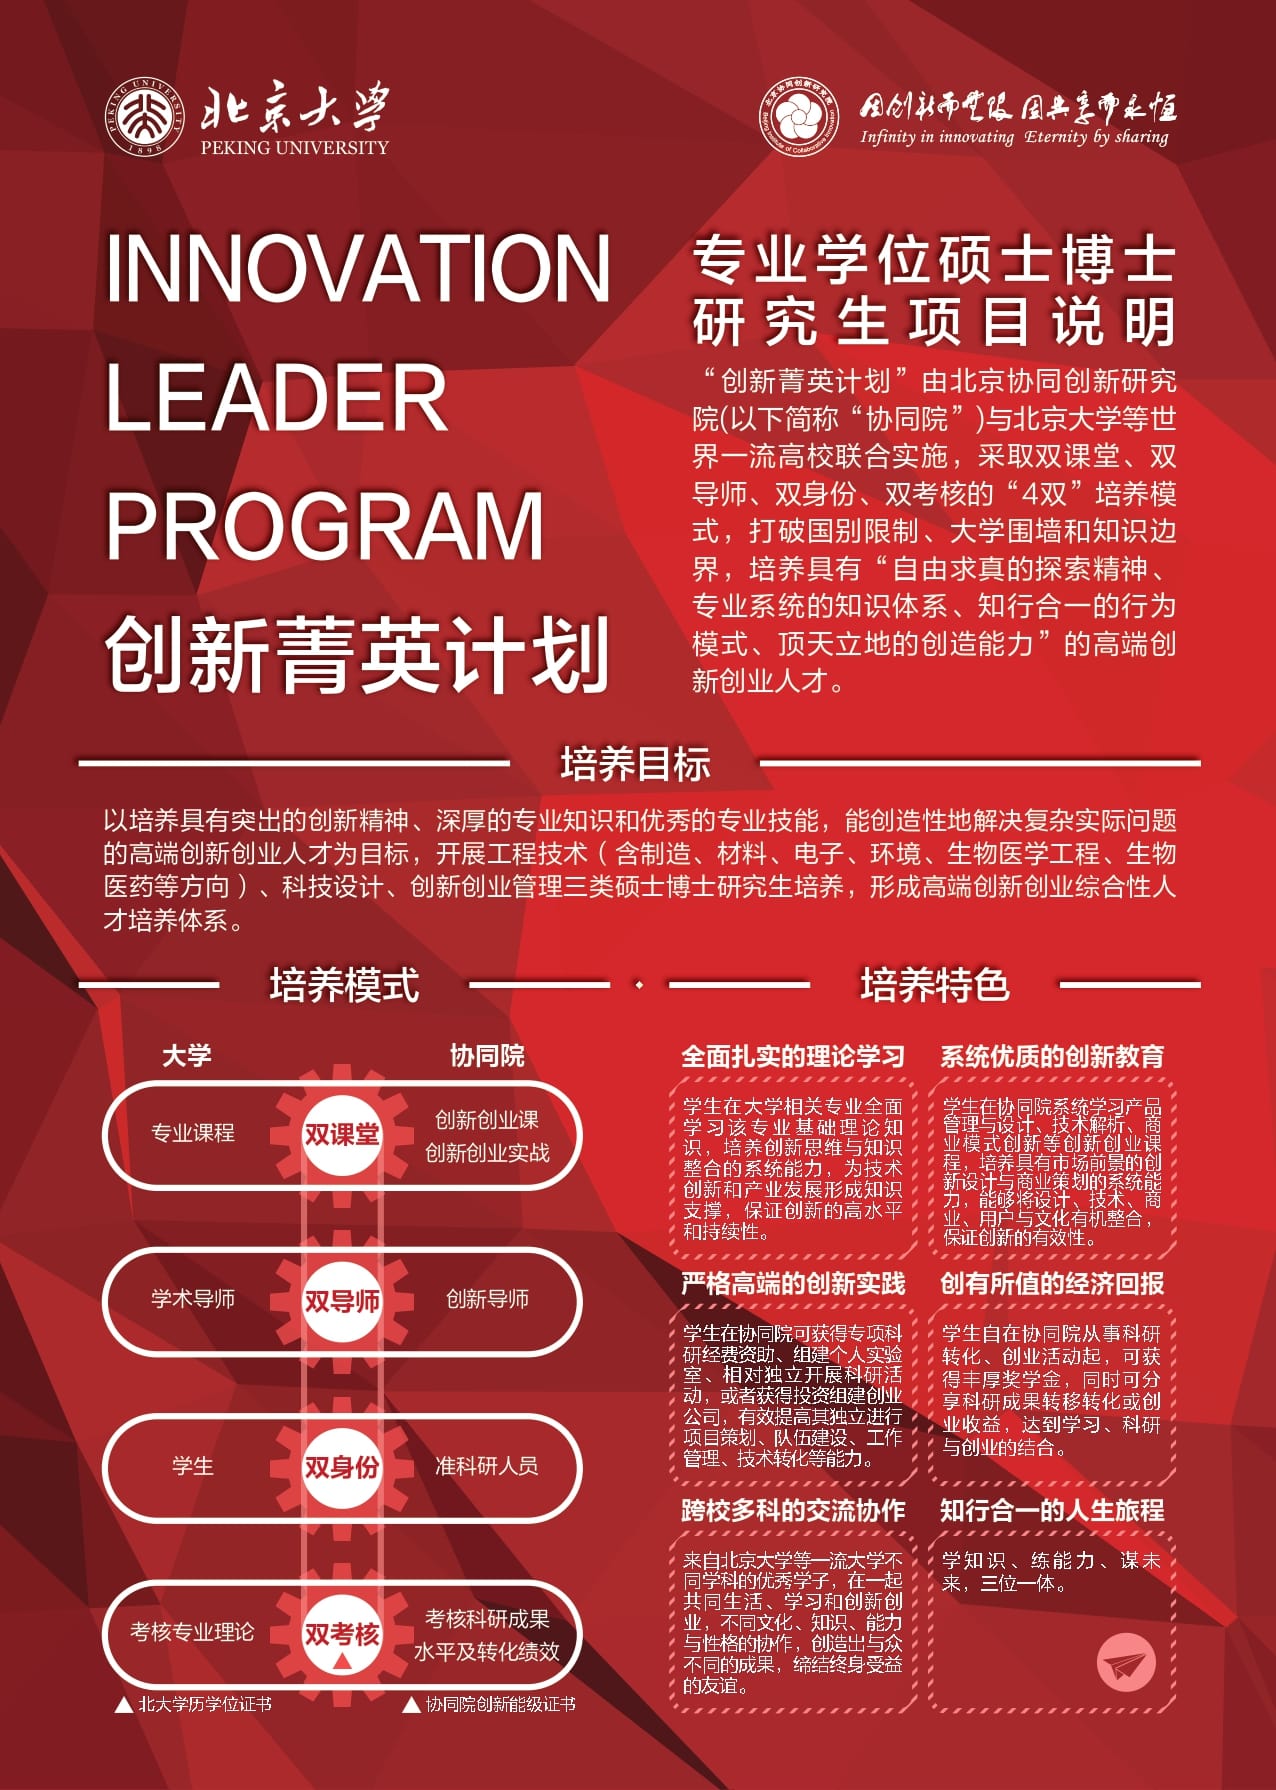 欢迎报考2021年北京大学“创新菁英计划”创新创业管理方向全日制硕士研究生